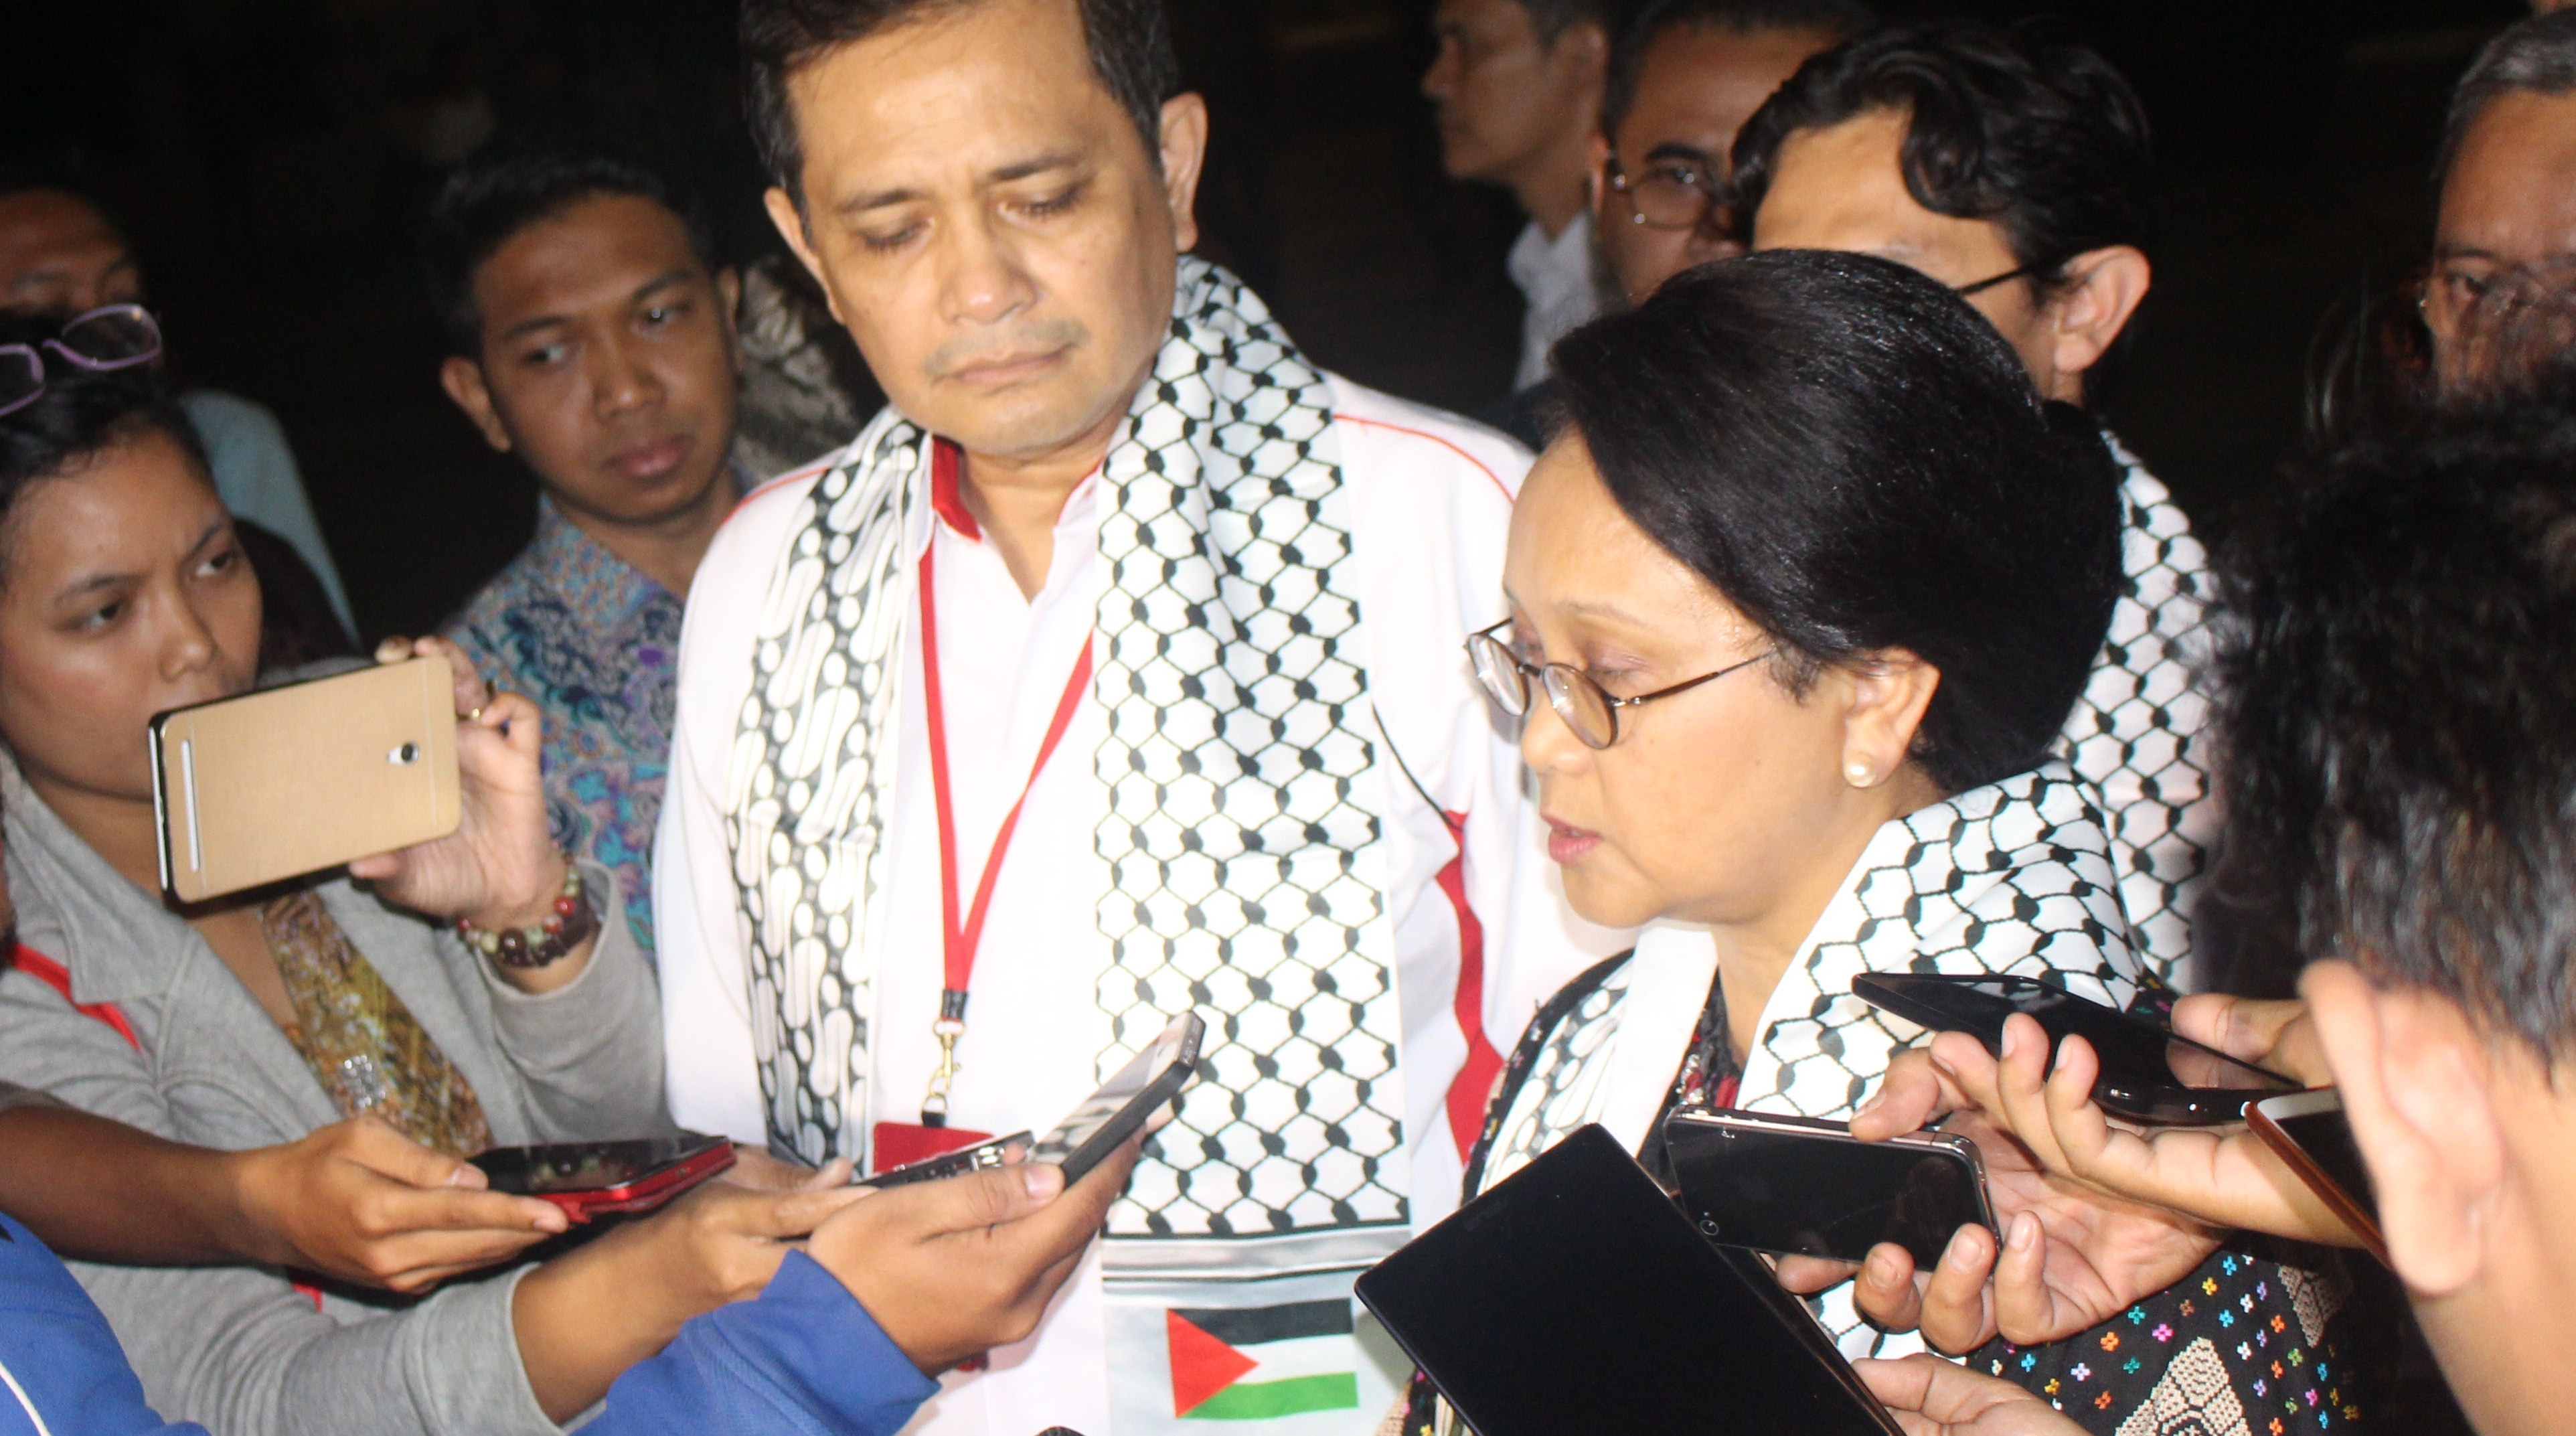 MENLU: RS INDONESIA JEMBATAN PERSAHABATAN RAKYAT INDONESIA DENGAN RAKYAT PALESTINA